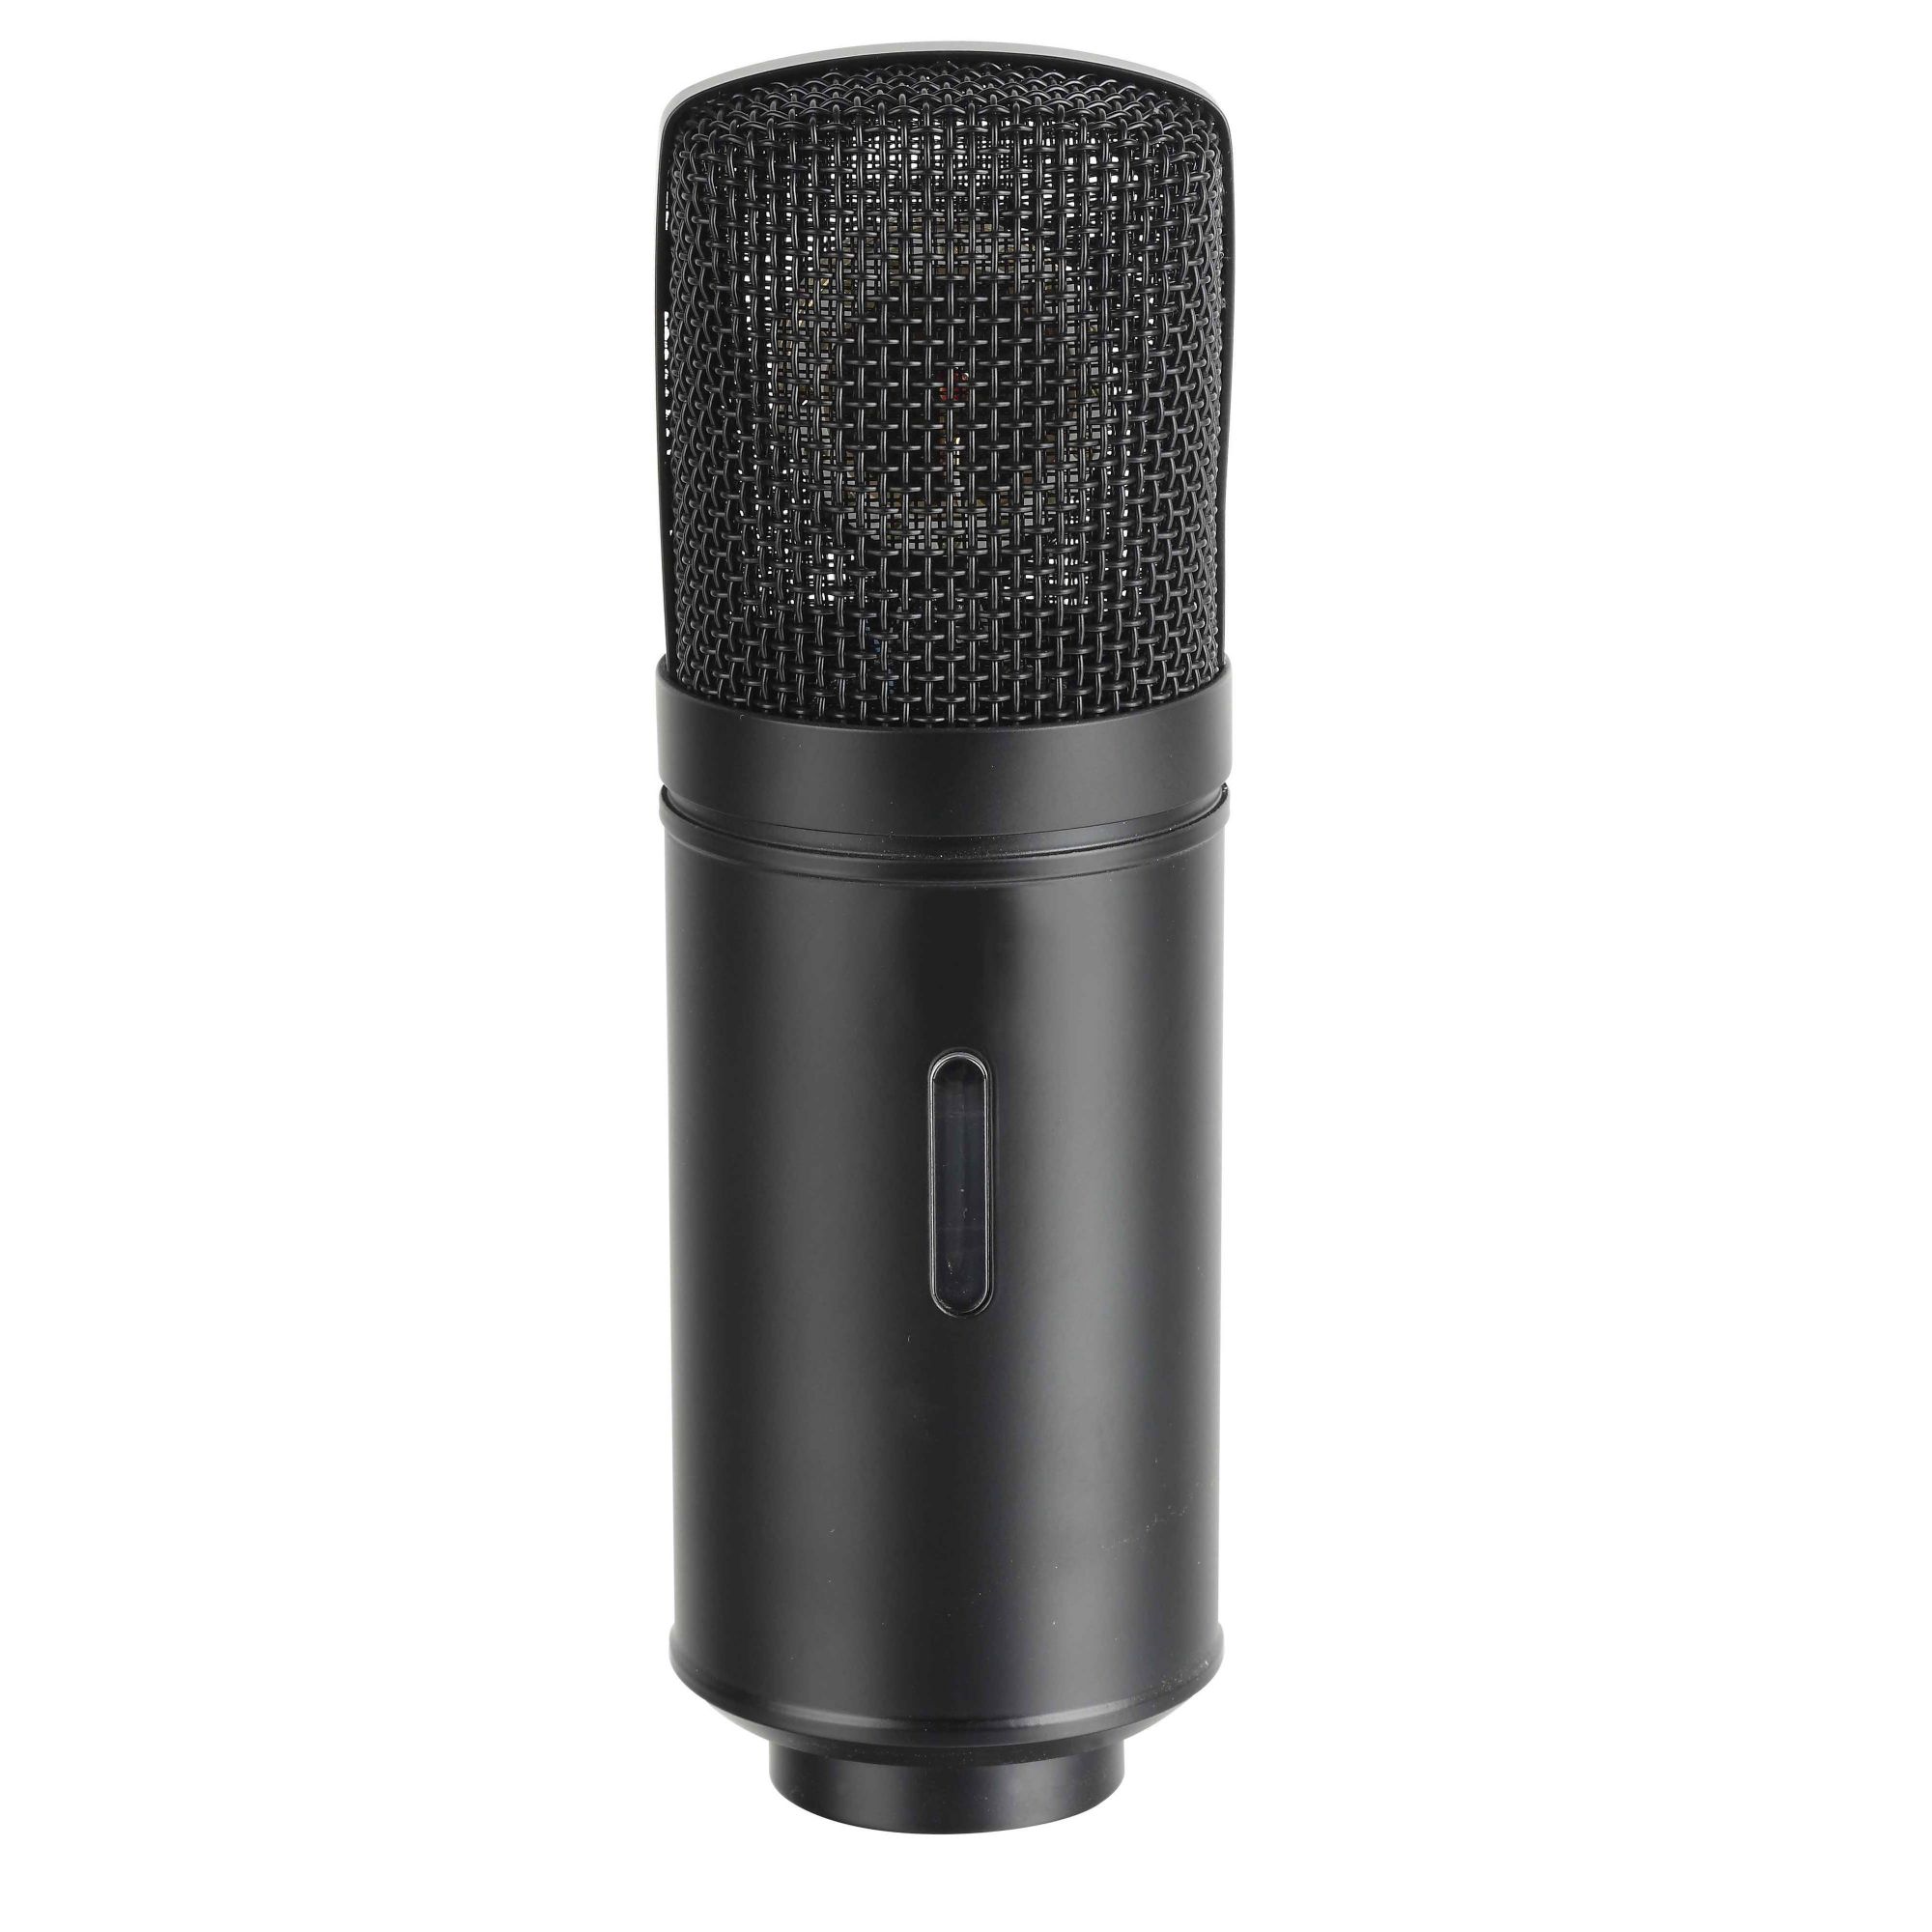 CSM003 Professional Condenser Studio Microphones